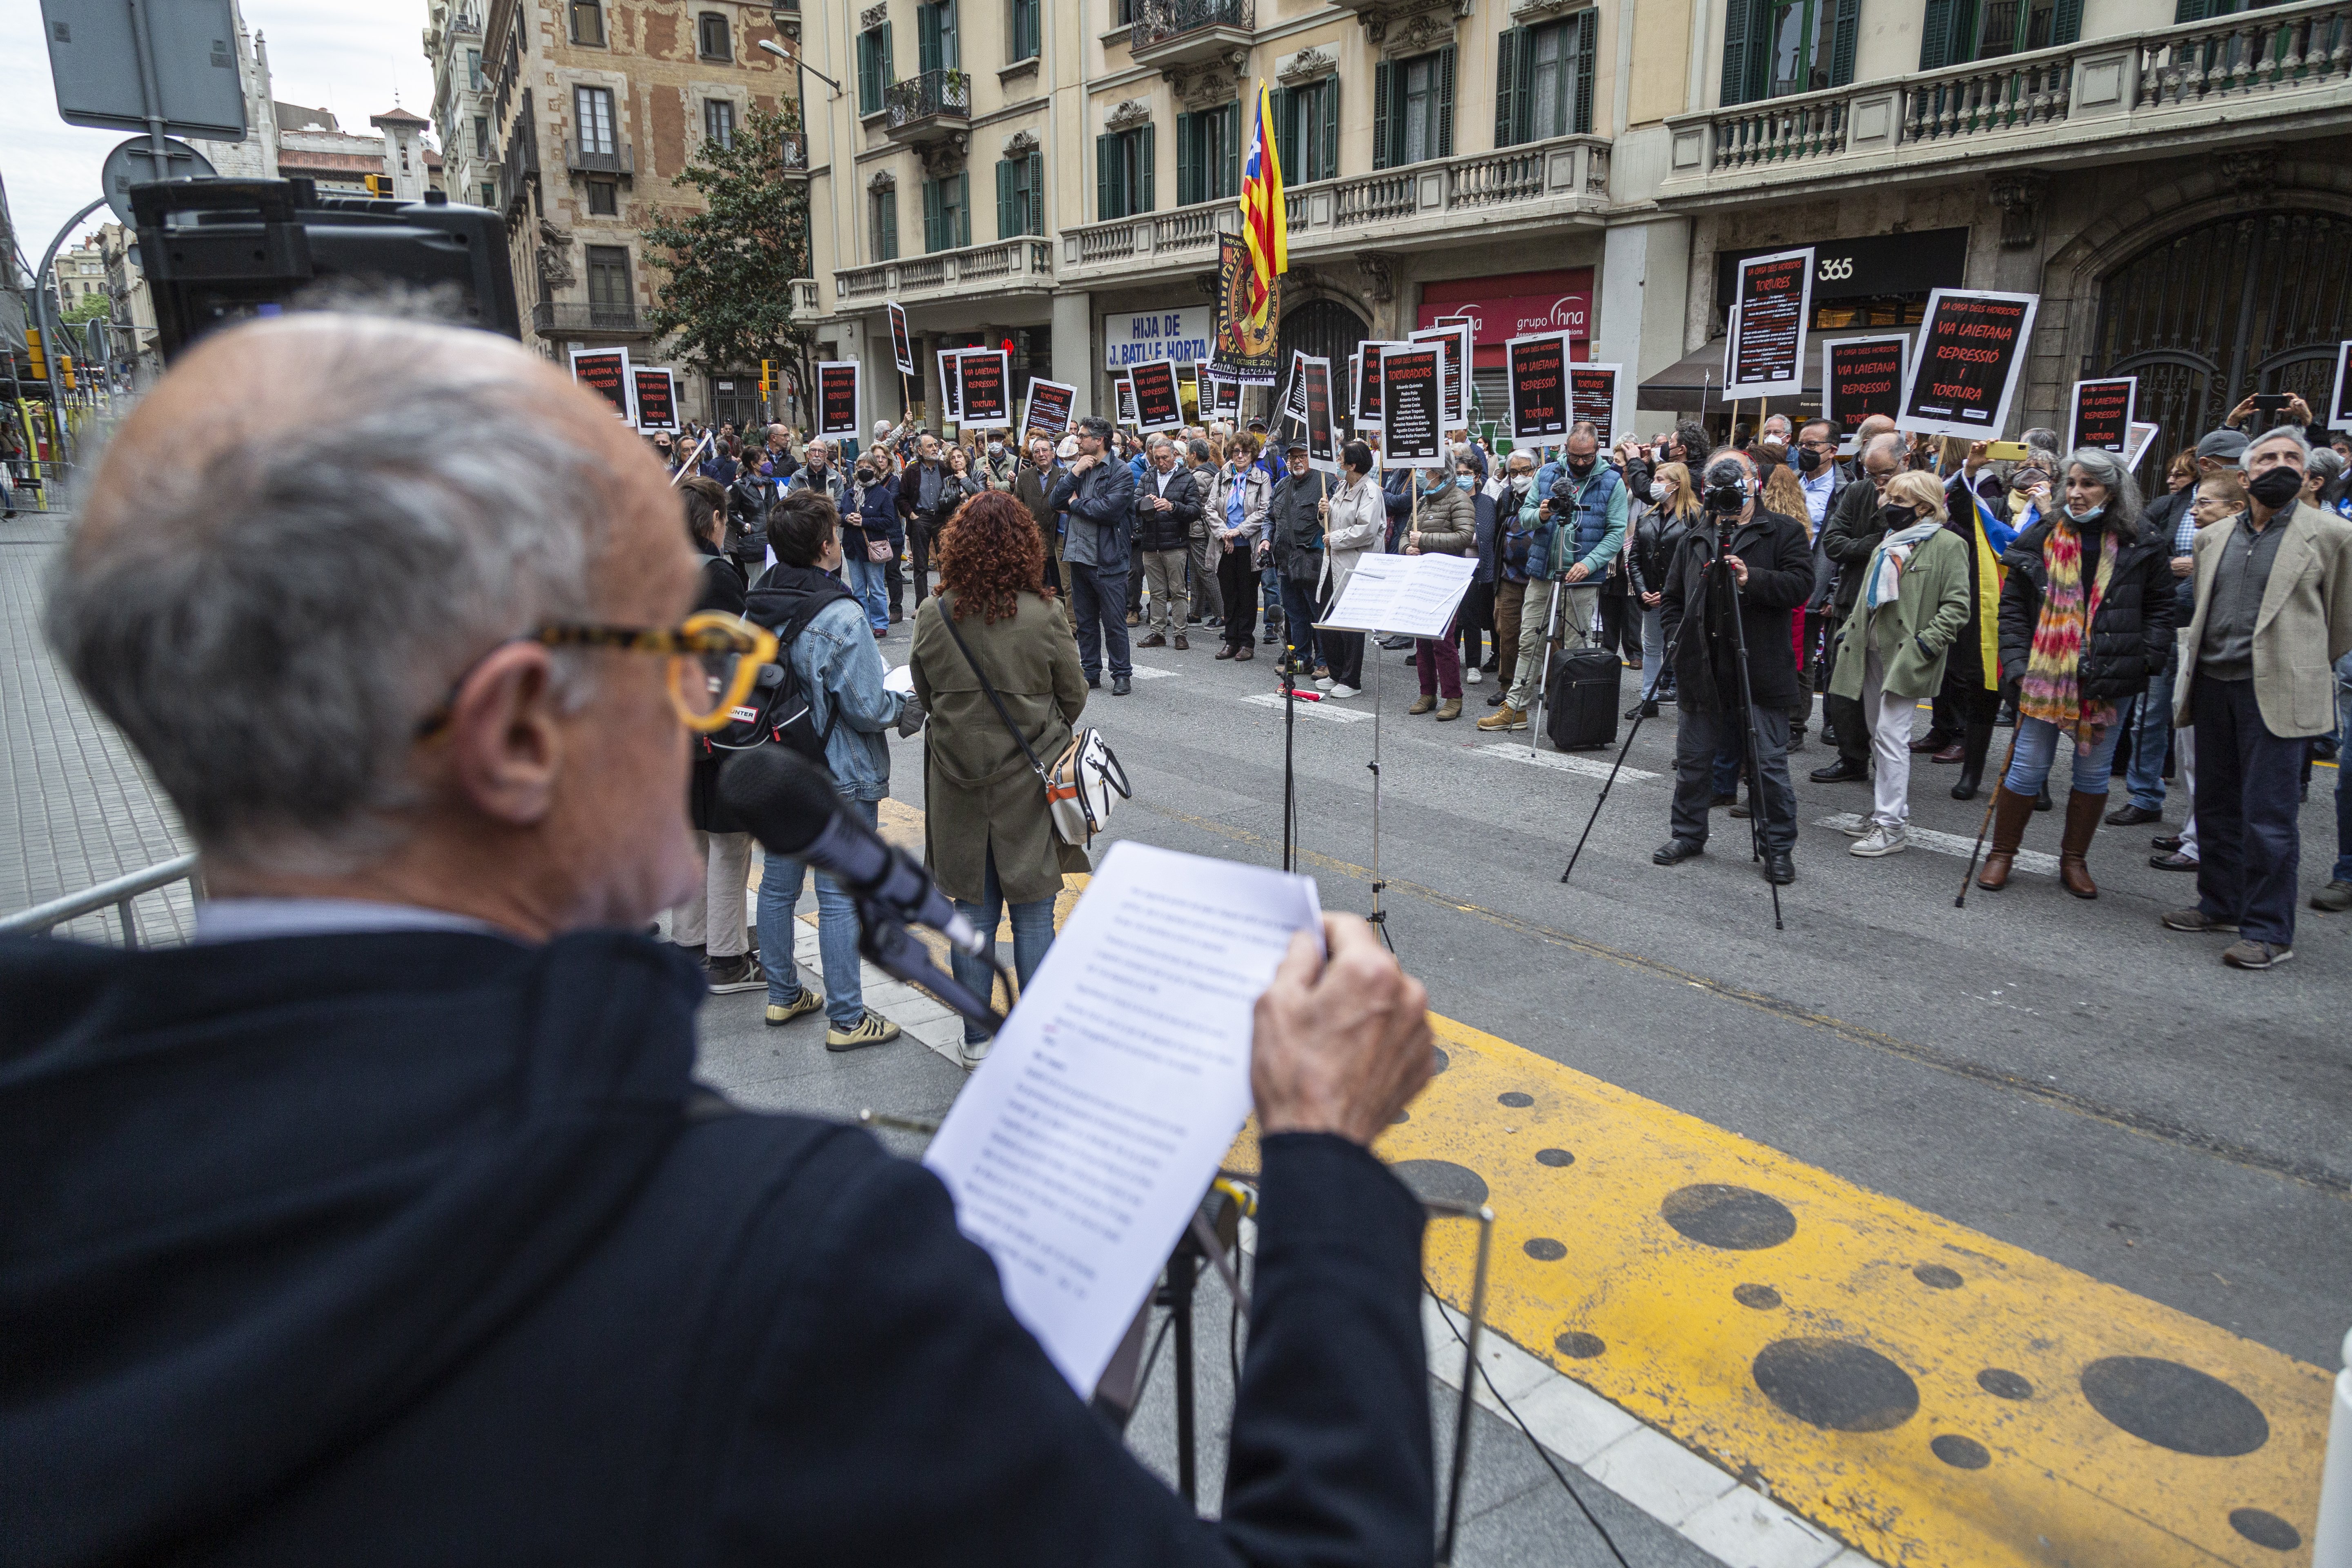 Rechazo frontal de la Comissió de la Dignitat a que Via Laietana sea espacio de memoria con la policía dentro